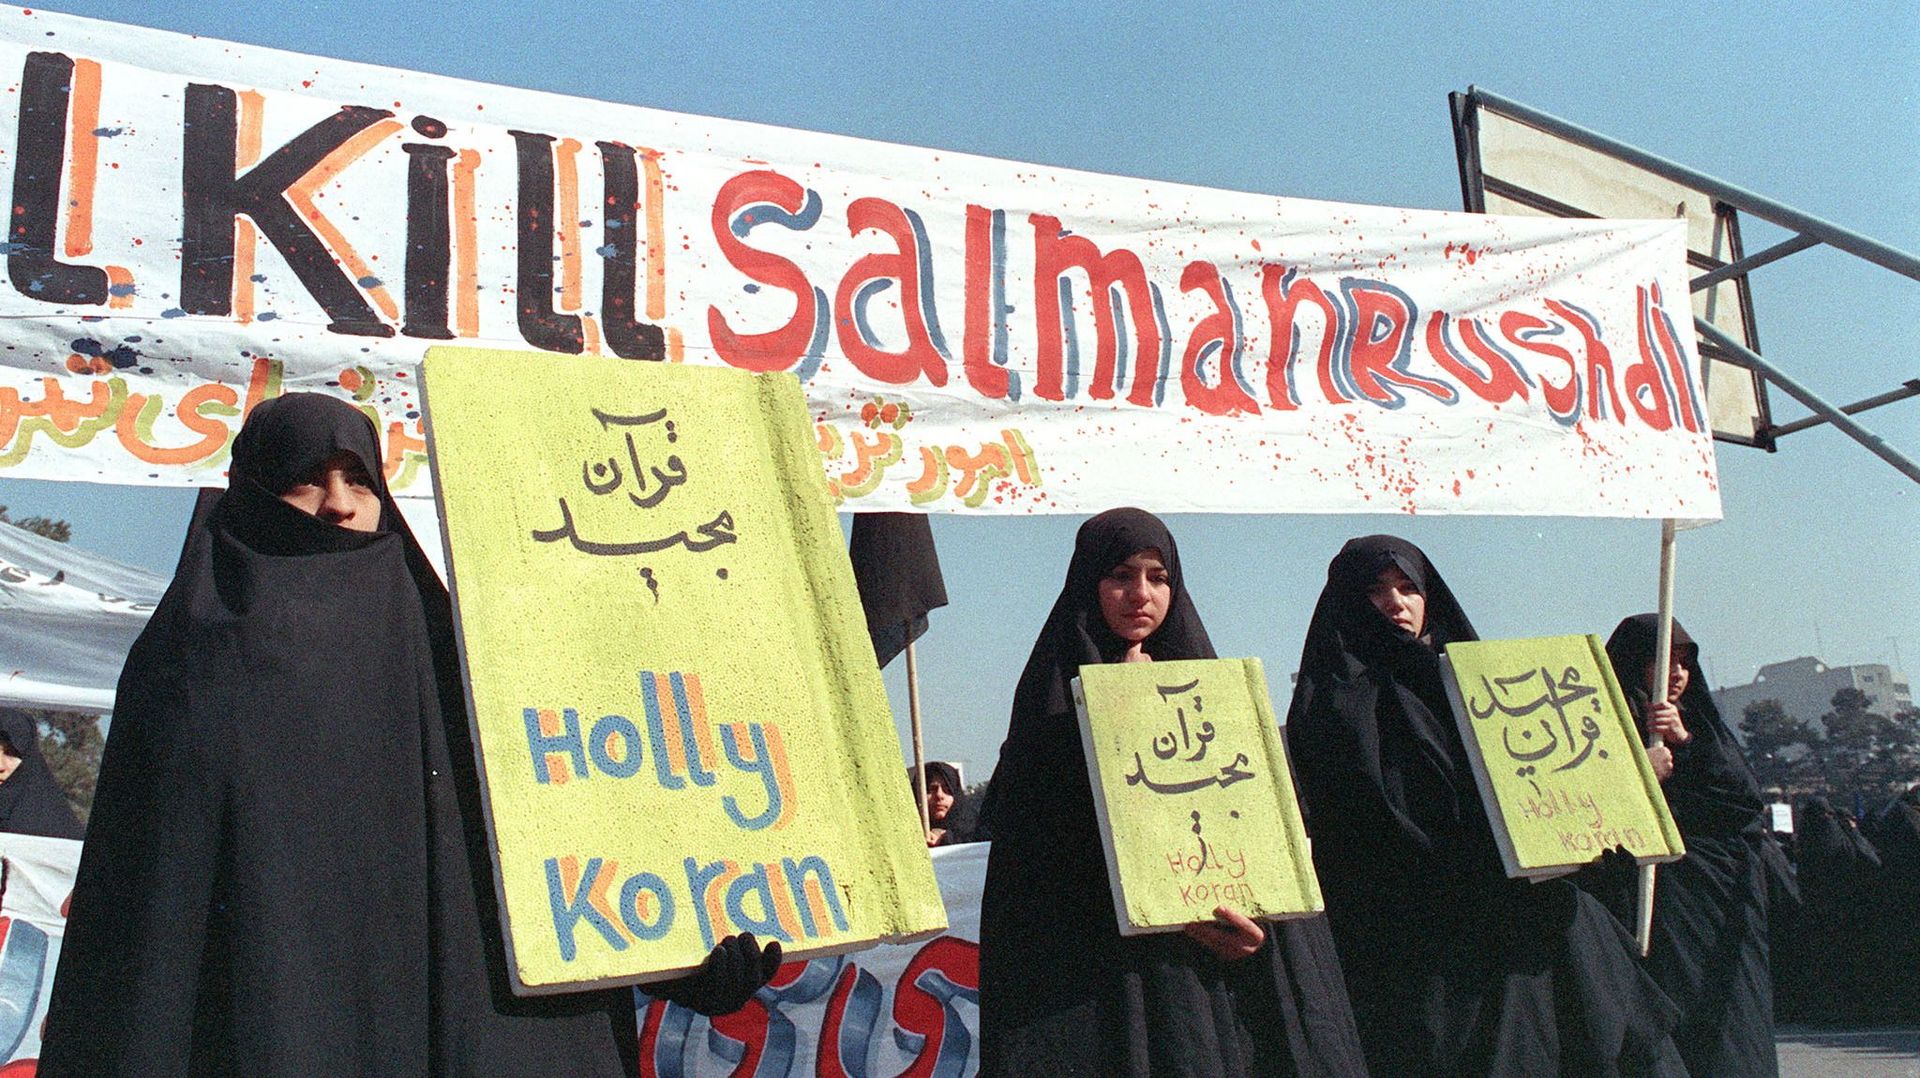 Sur cette photo d’archive prise le 17 février 1989, des Iraniennes tiennent des banderoles sur lesquelles on peut lire "Holly Koran" et "Kill Salman Rushdie" lors d’une manifestation contre l’écrivain britannique Salman Rushdie à Téhéran.